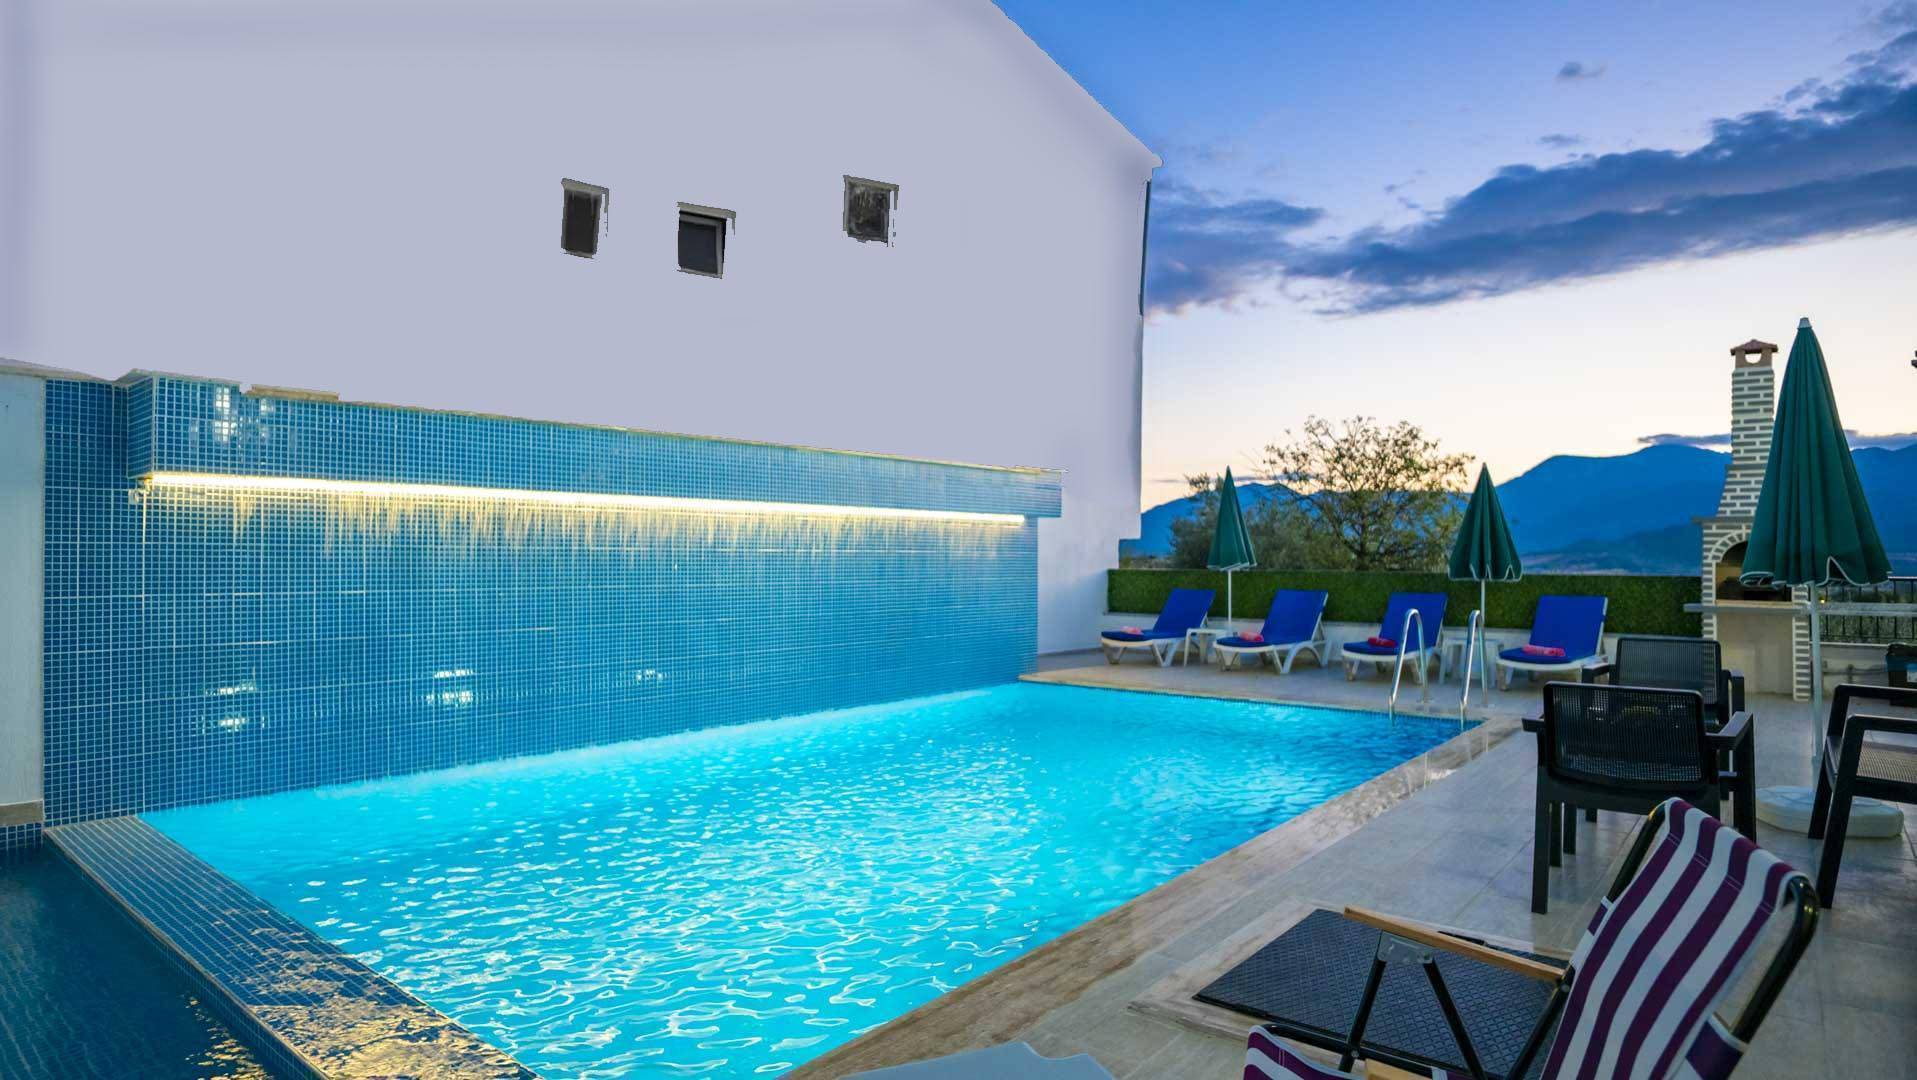  Fethiye'de Merkezi Konumda, Korunaklı Özel Havuzlu, Kiralık Modern Villa